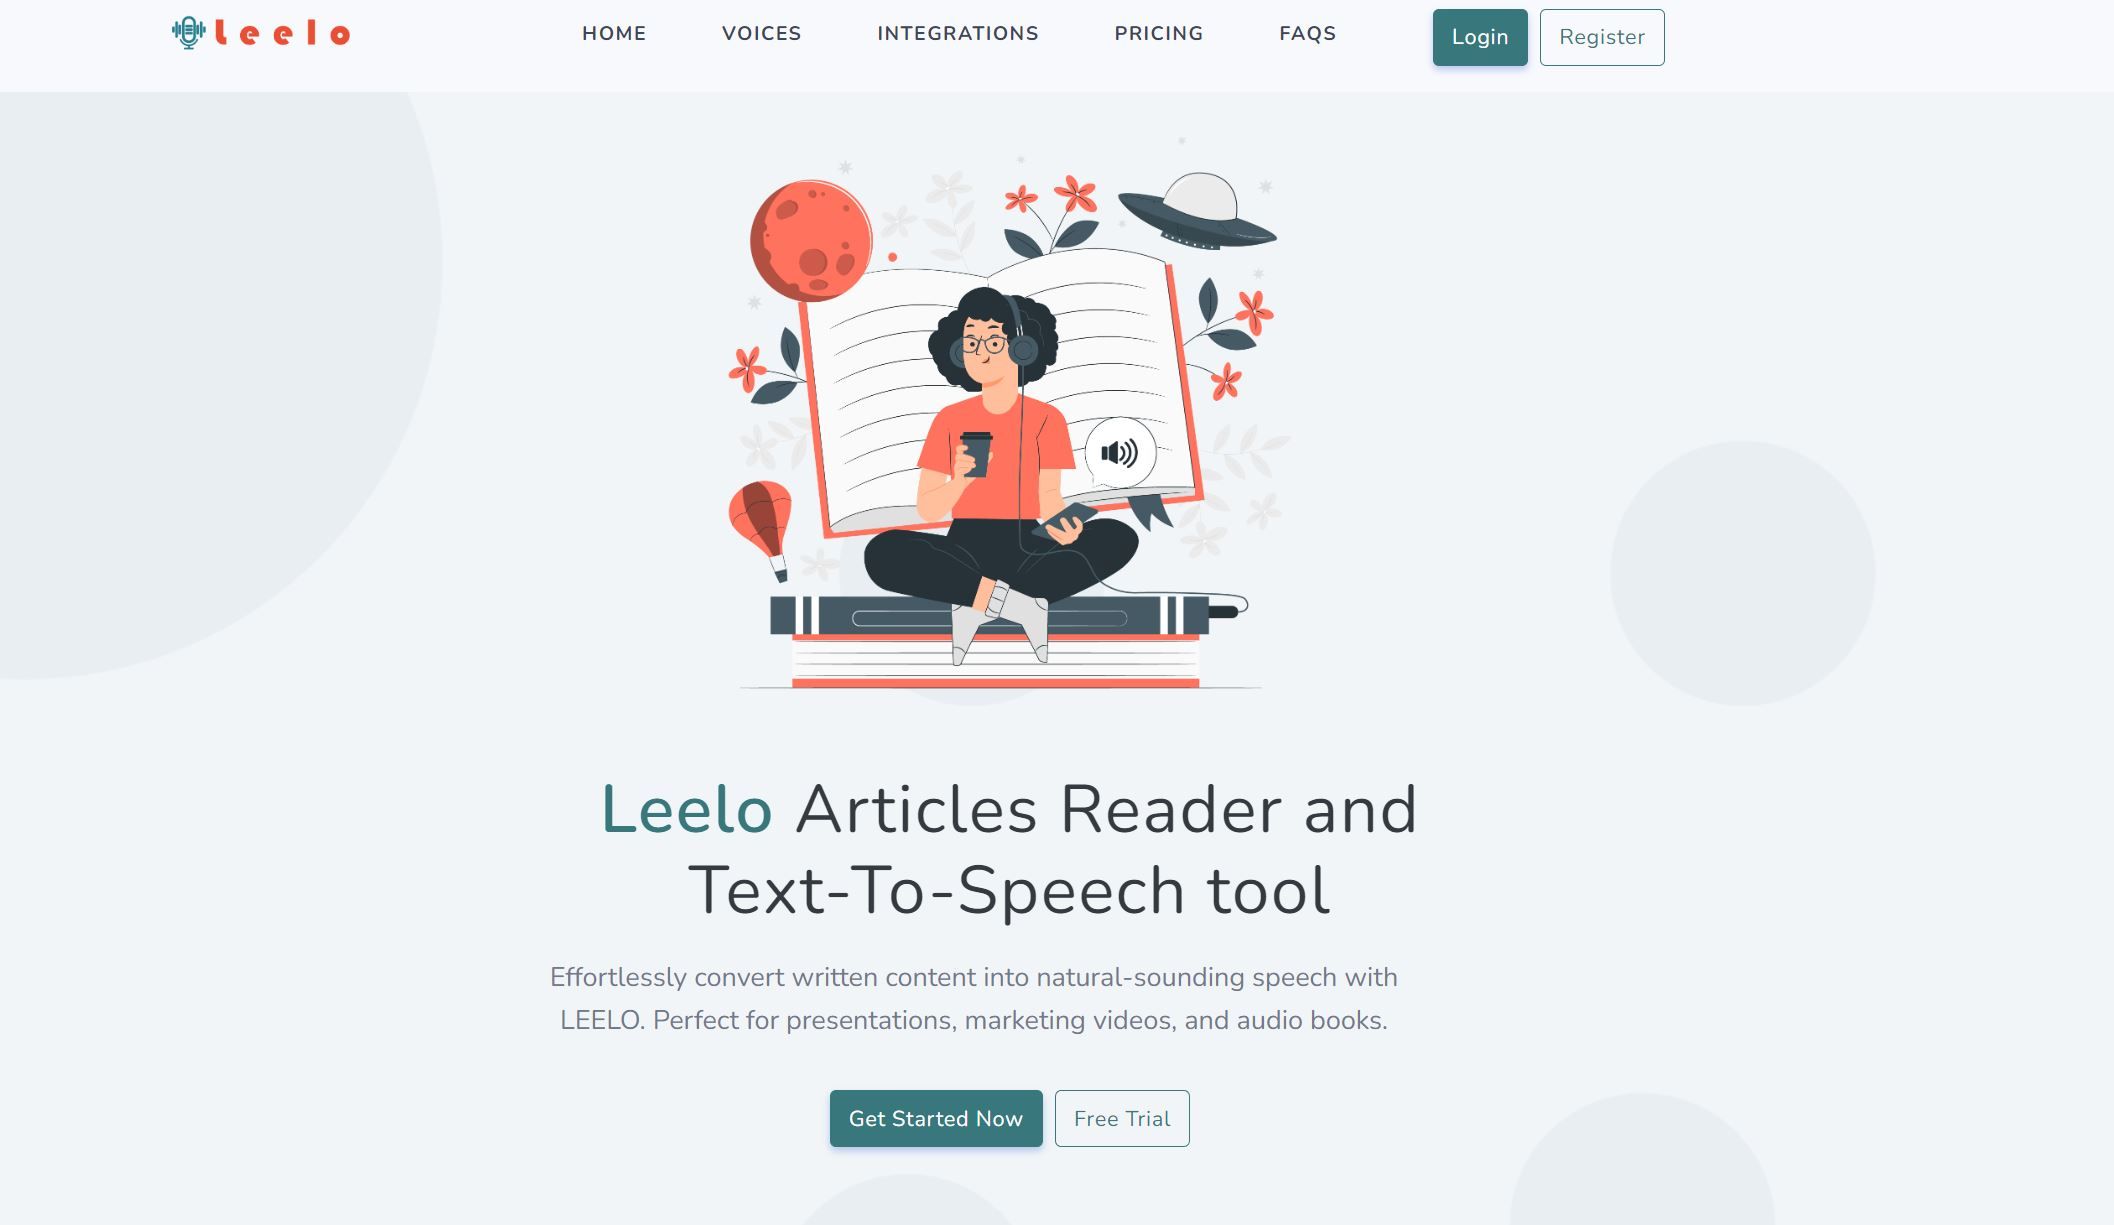 LeeloLeelo converts written content to natural speech in an effortless